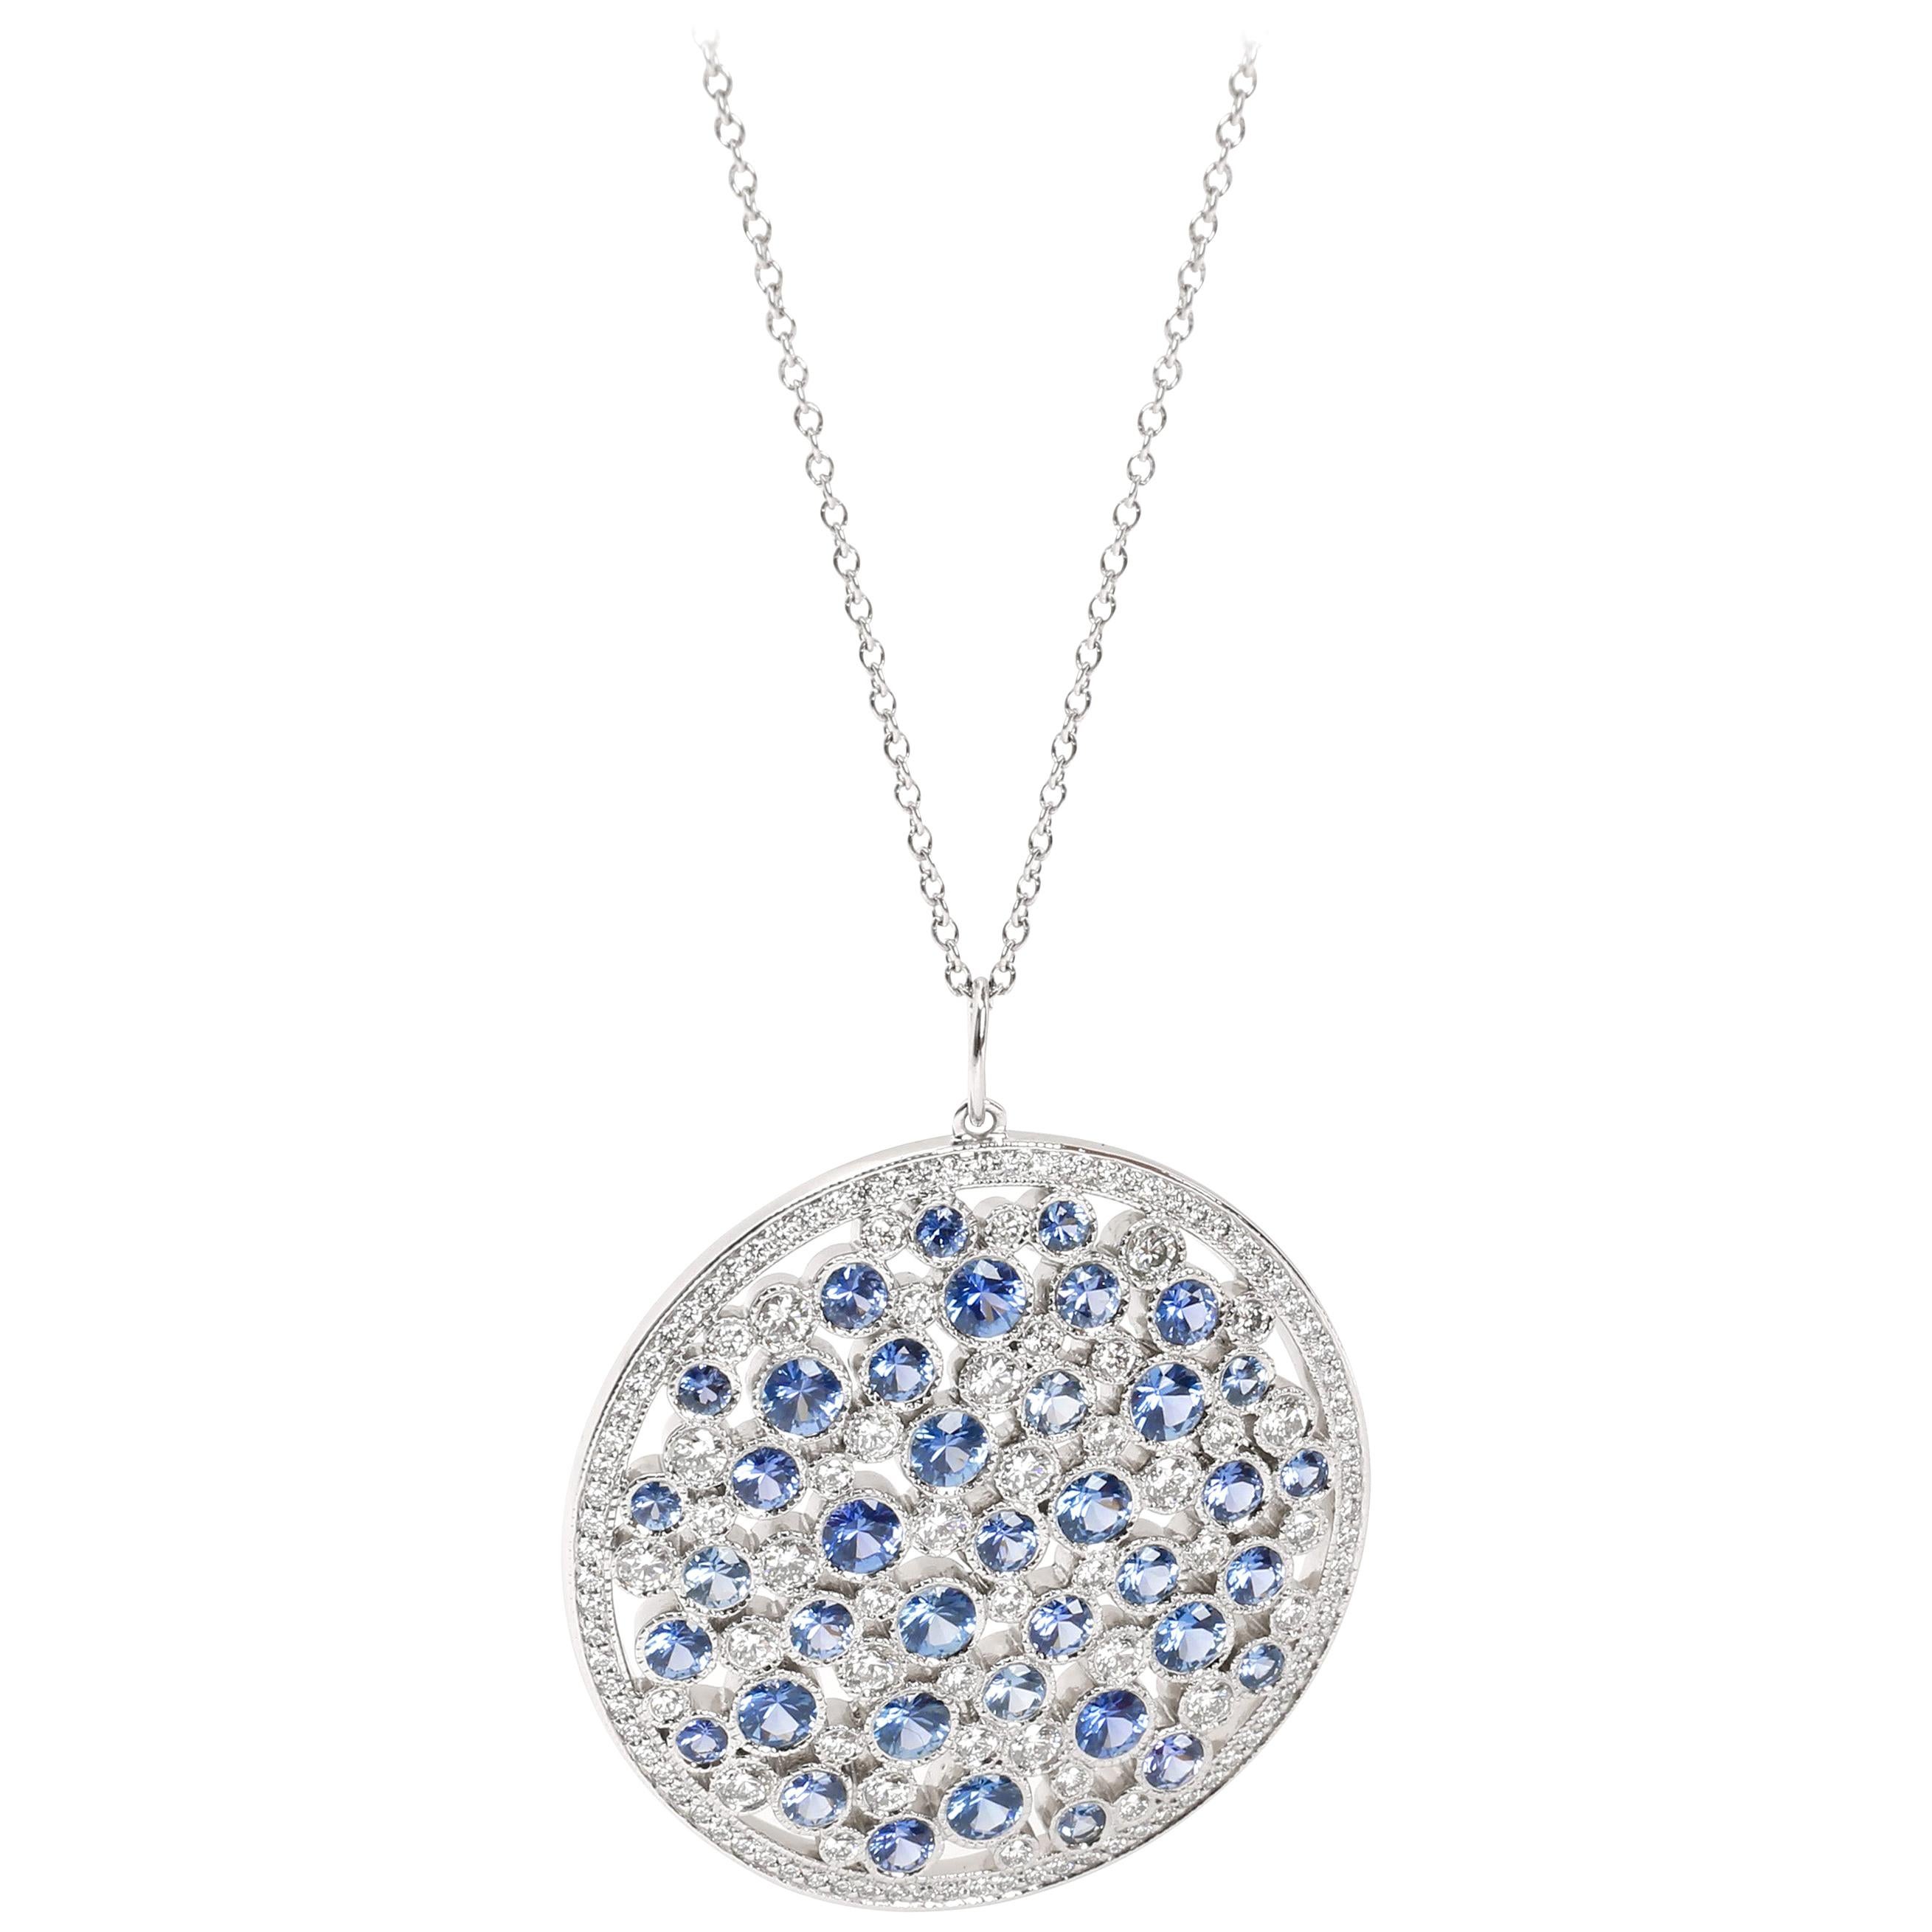 Tiffany & Co. Cobblestone Diamond and Blue Sapphire Necklace in Platinum